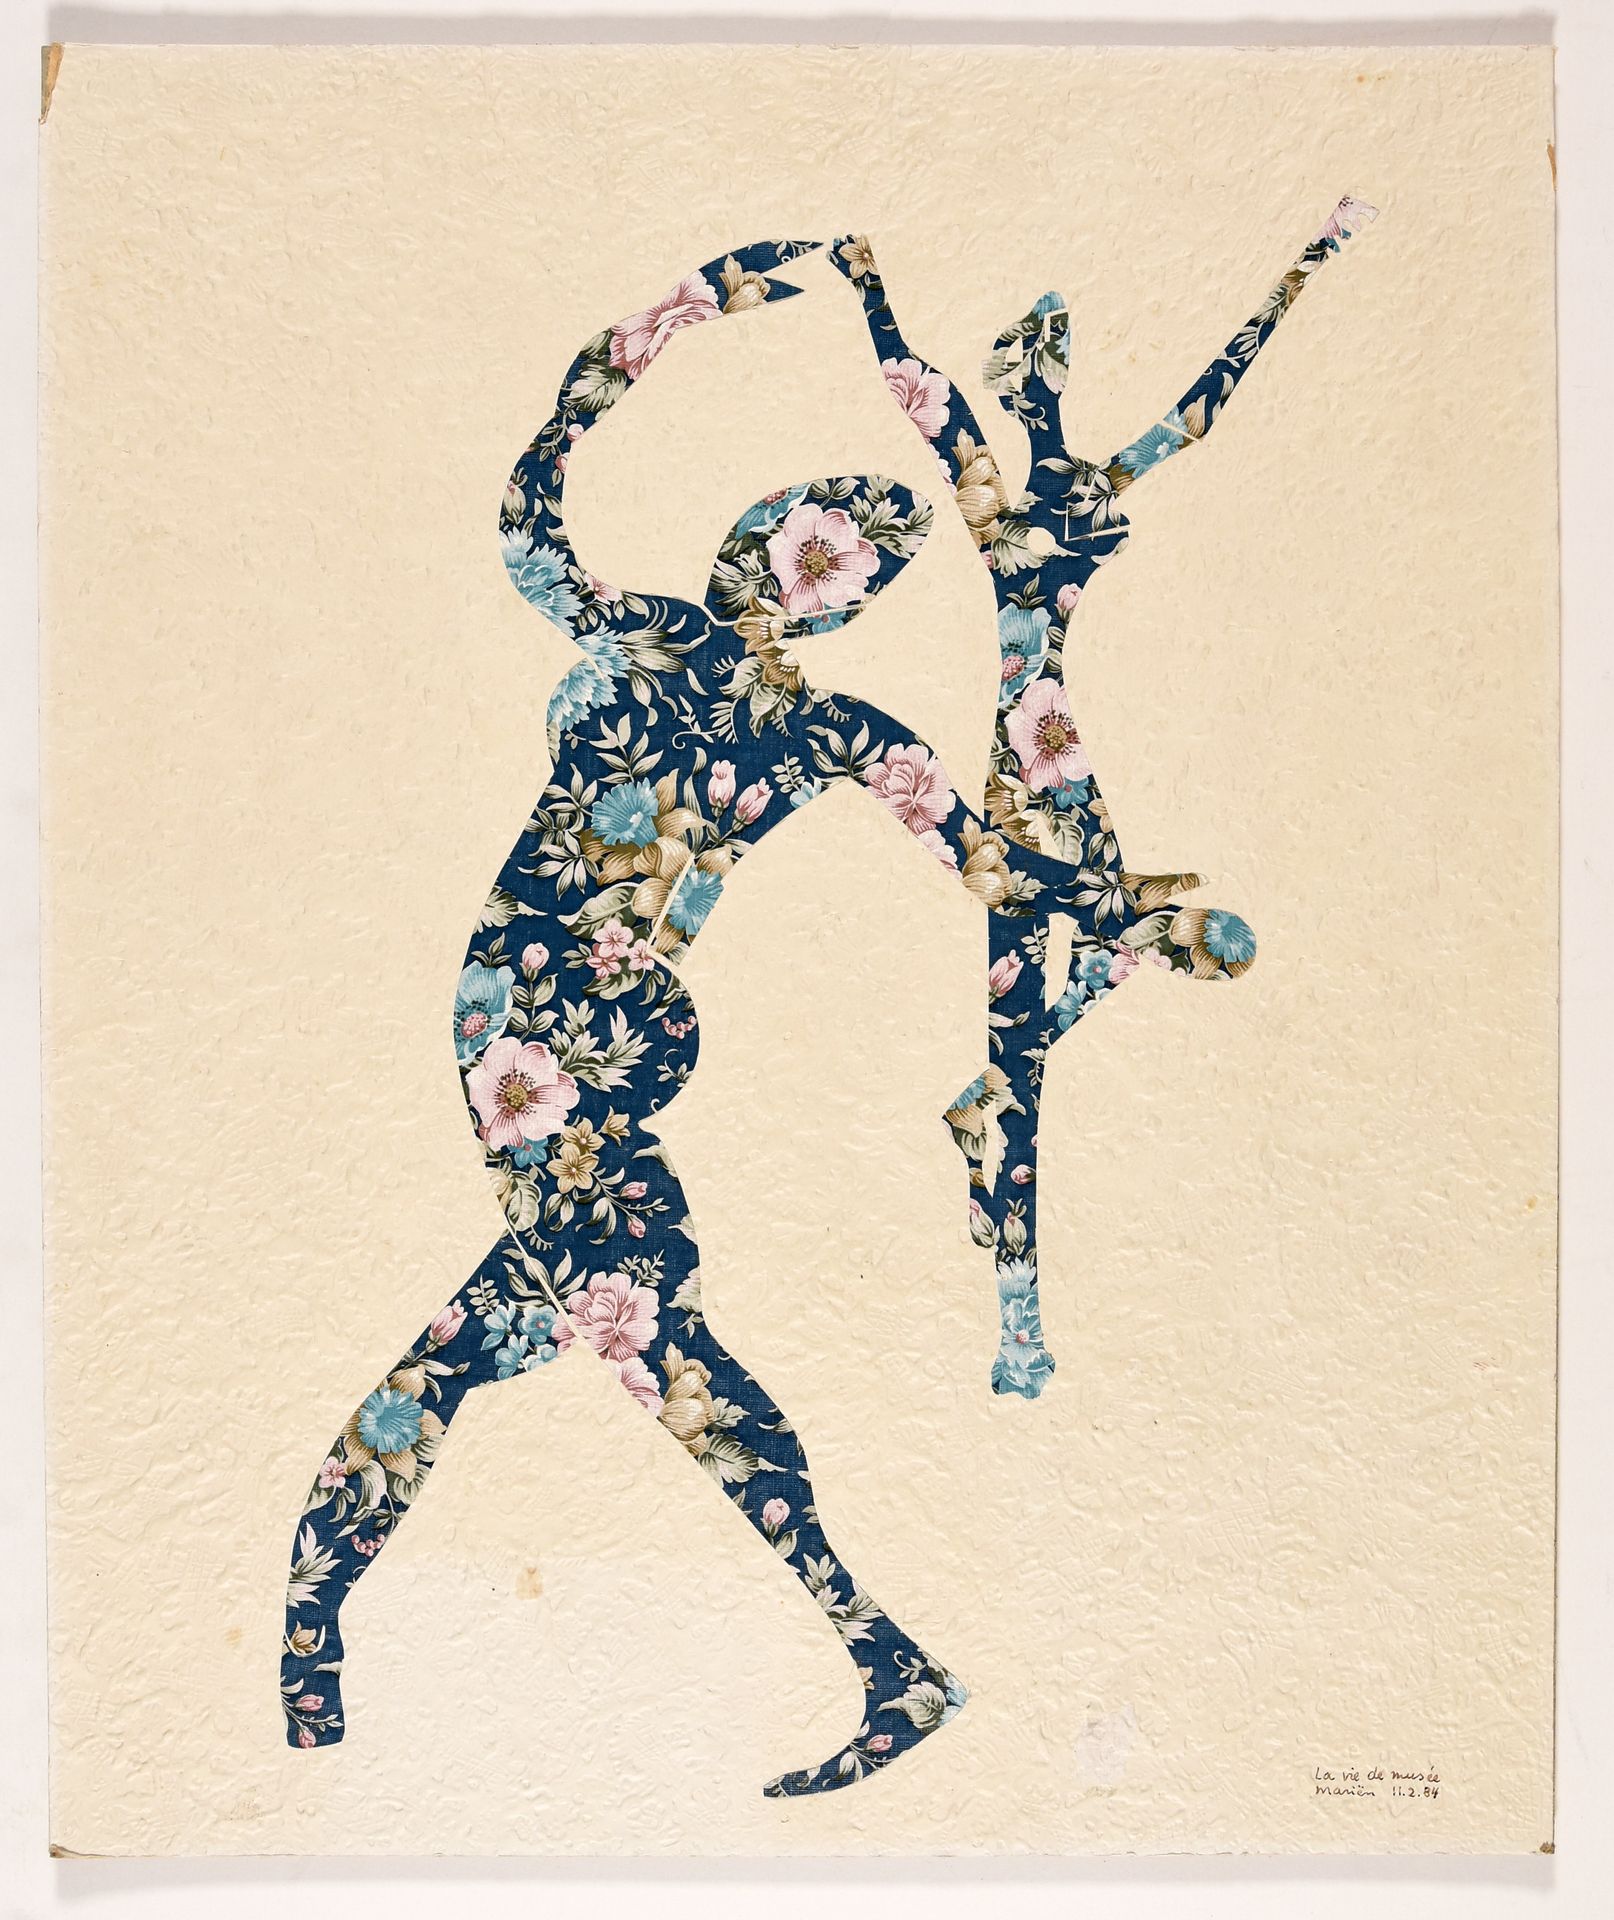 Mariën, Marcel MARIËN, Marcel La vie de musée. 1984 Collage, papiers peints mont&hellip;